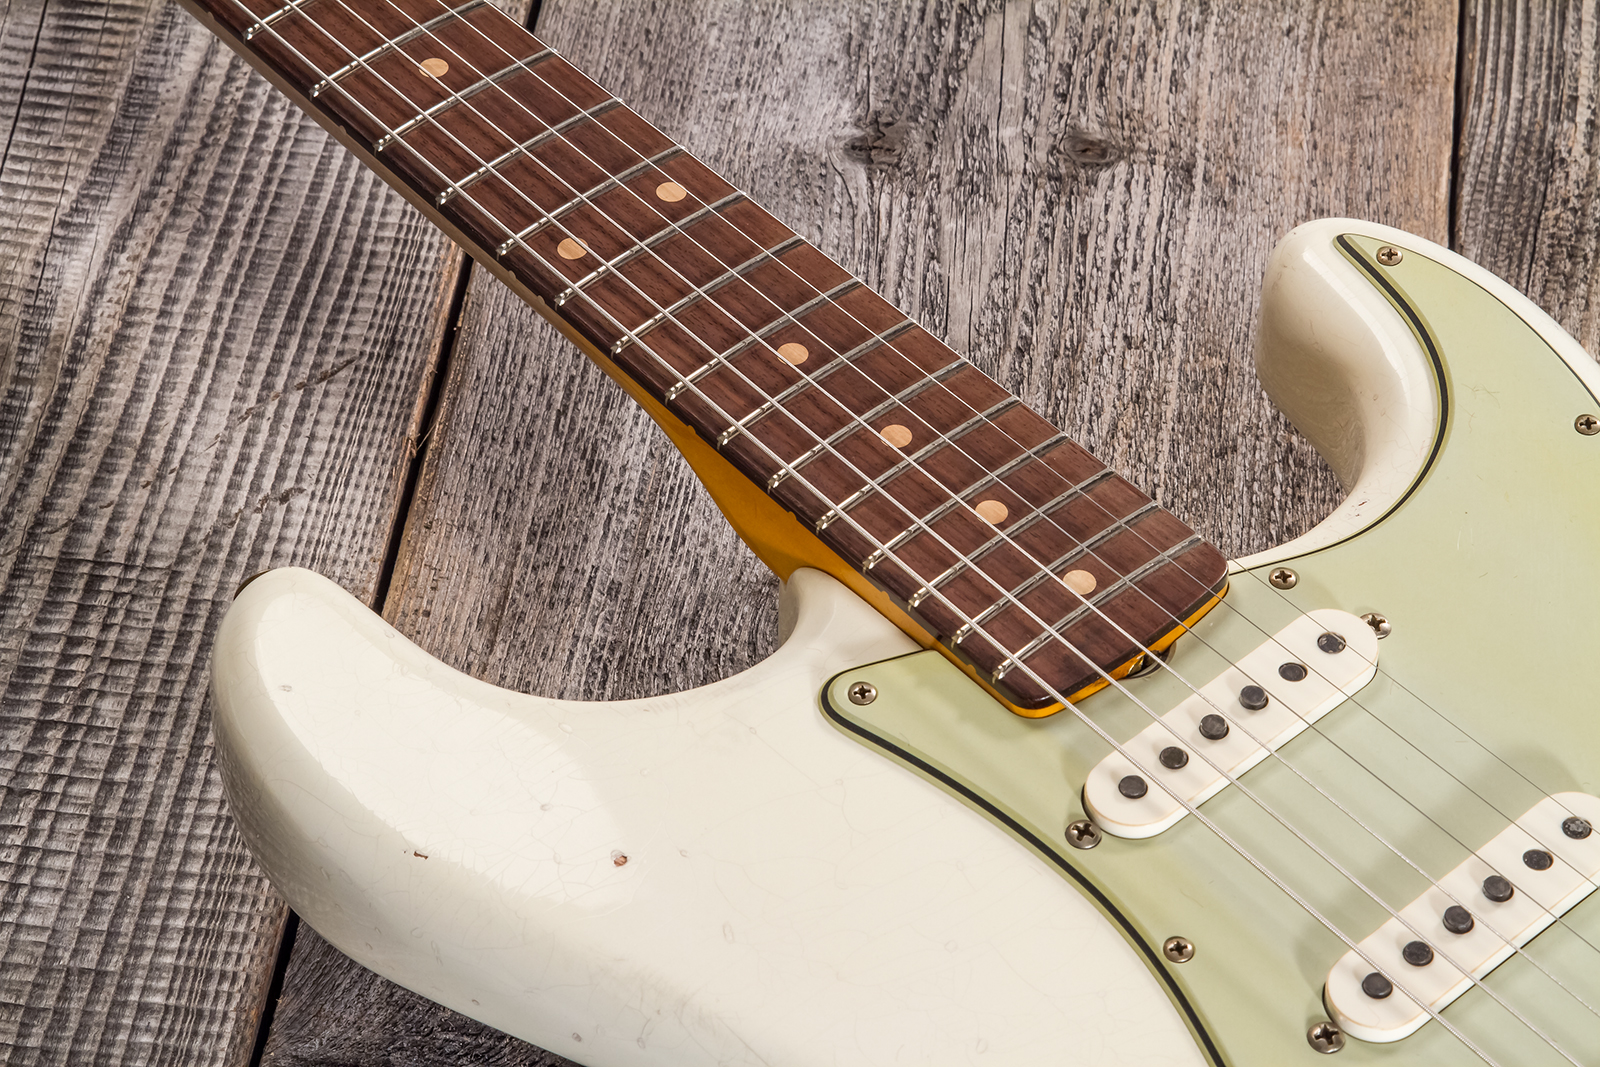 Fender Custom Shop Strat 1962/63 3s Trem Rw #cz565163 - Journeyman Relic Olympic White - Elektrische gitaar in Str-vorm - Variation 3